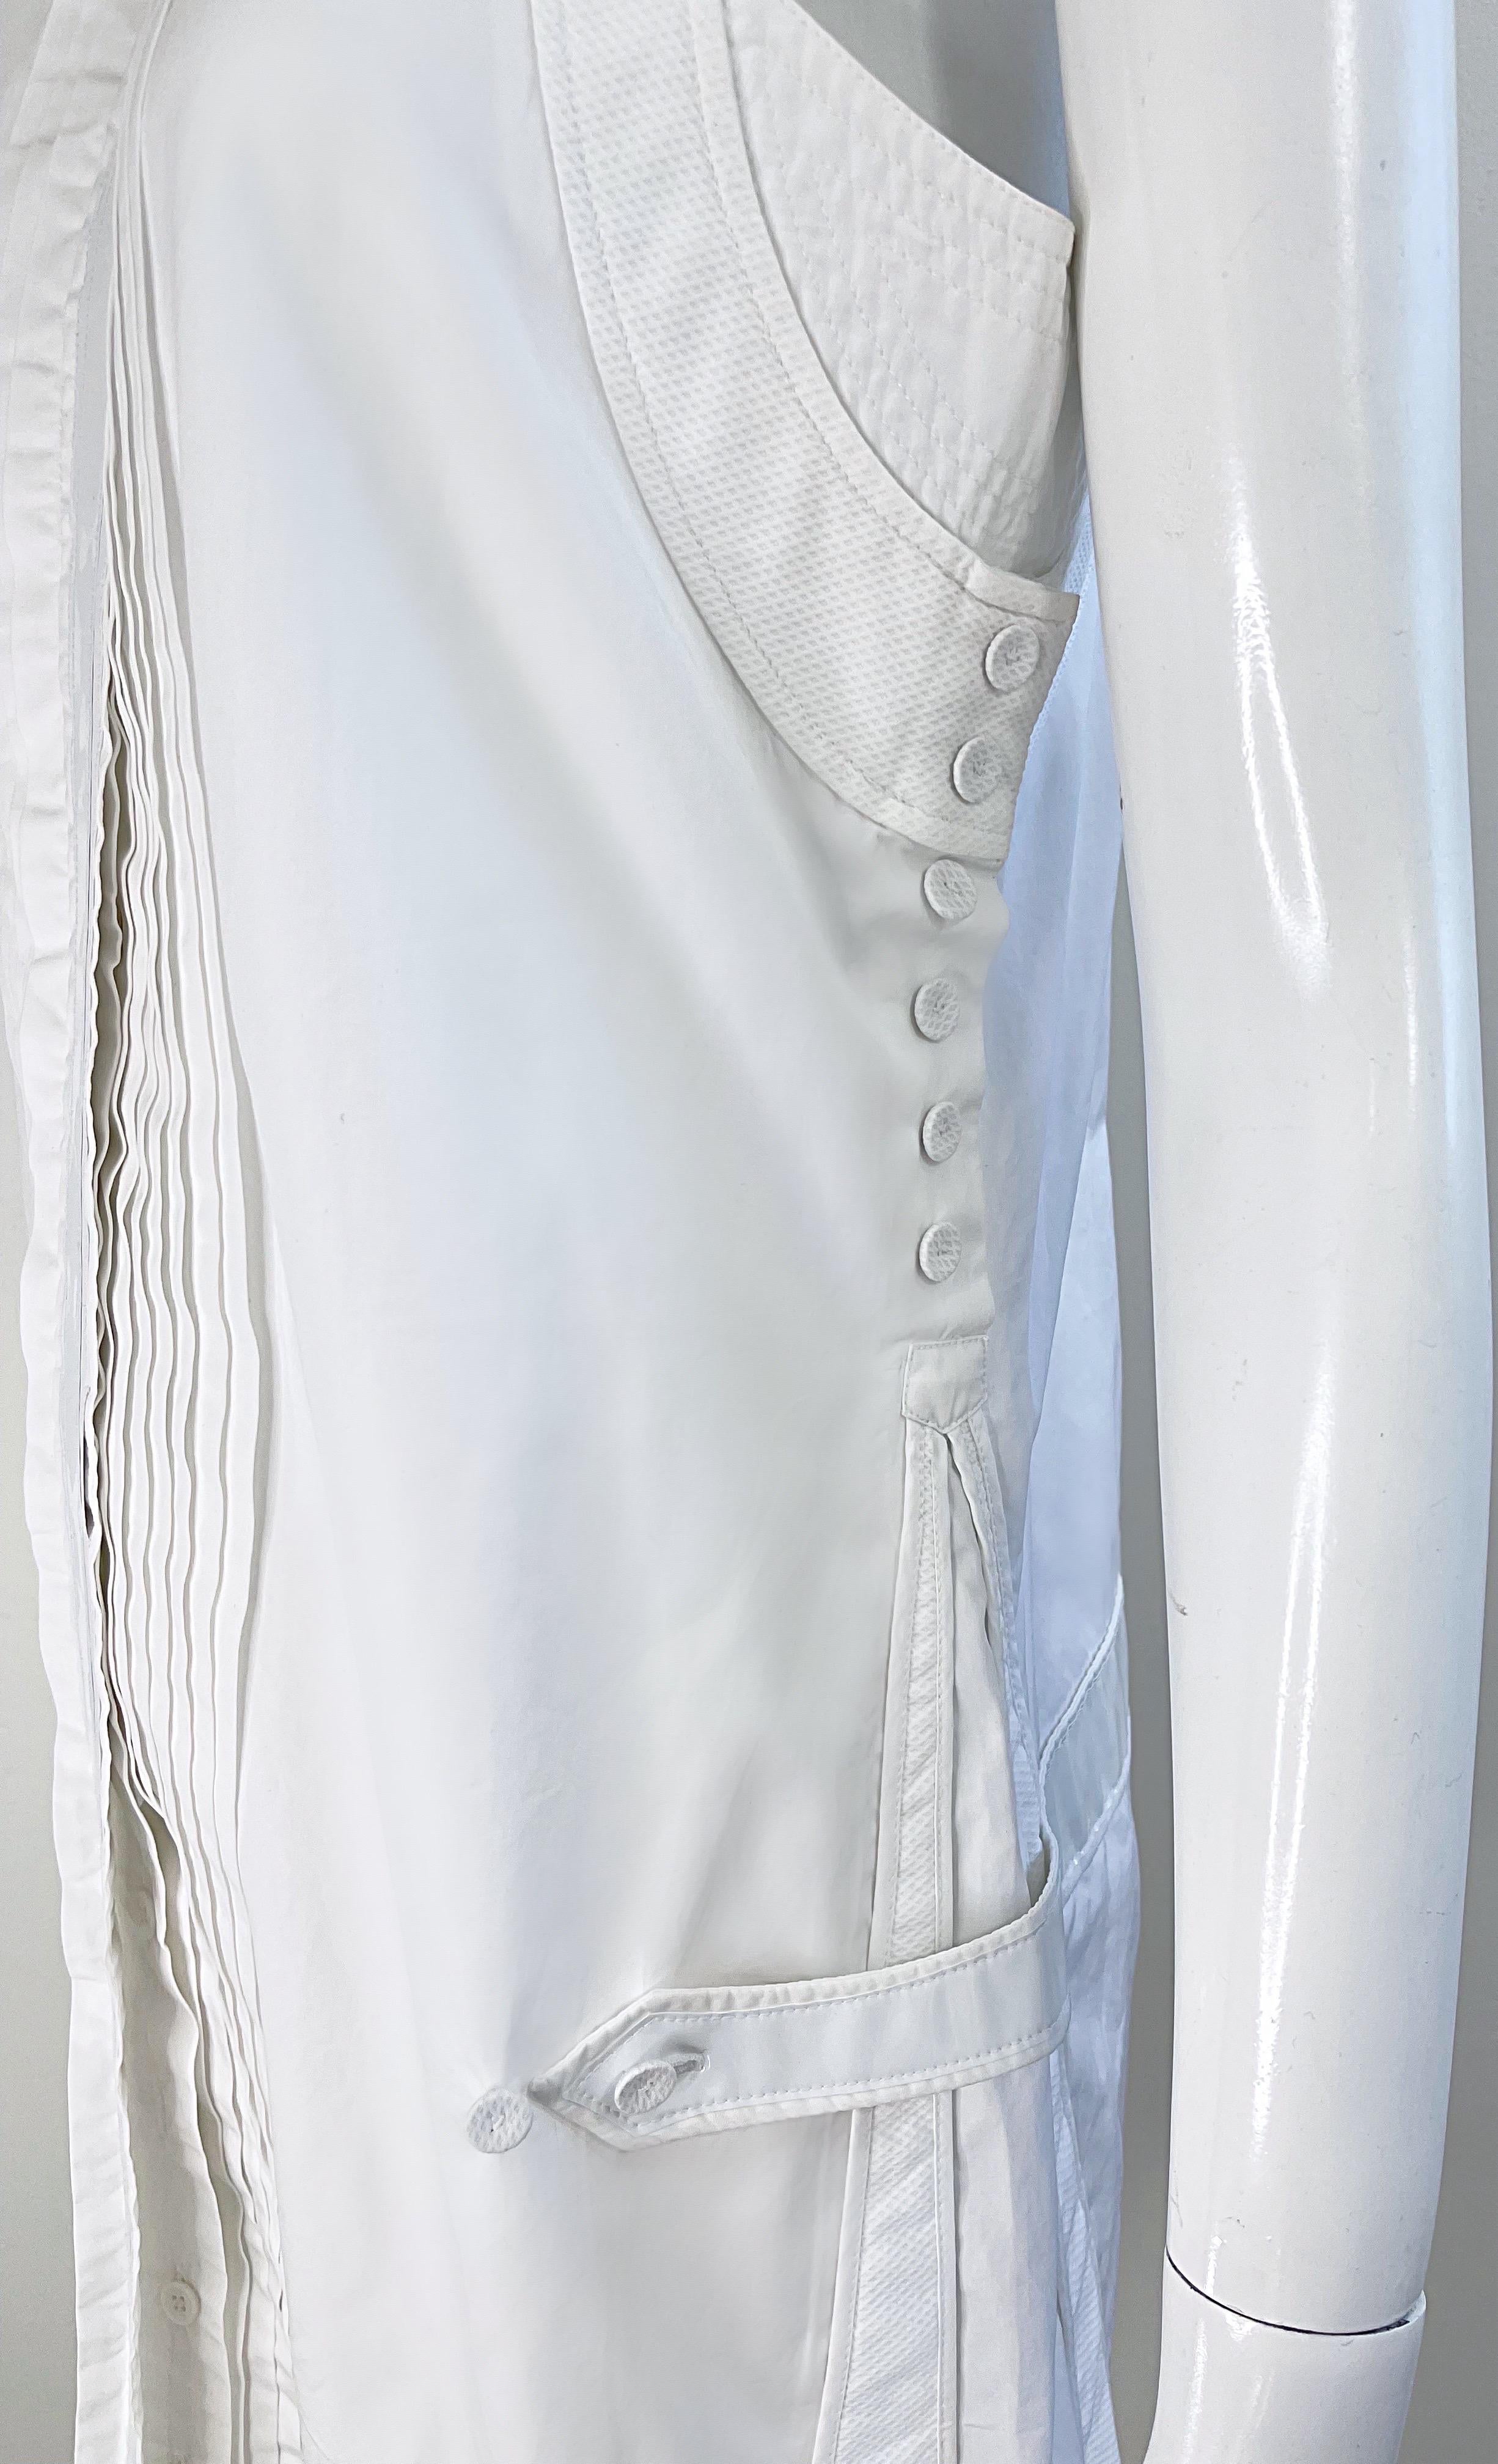 Balenciaga Spring 2007 by Nicolas Ghesquiere Size 38 / 8 White Tuxedo Dress  For Sale 7